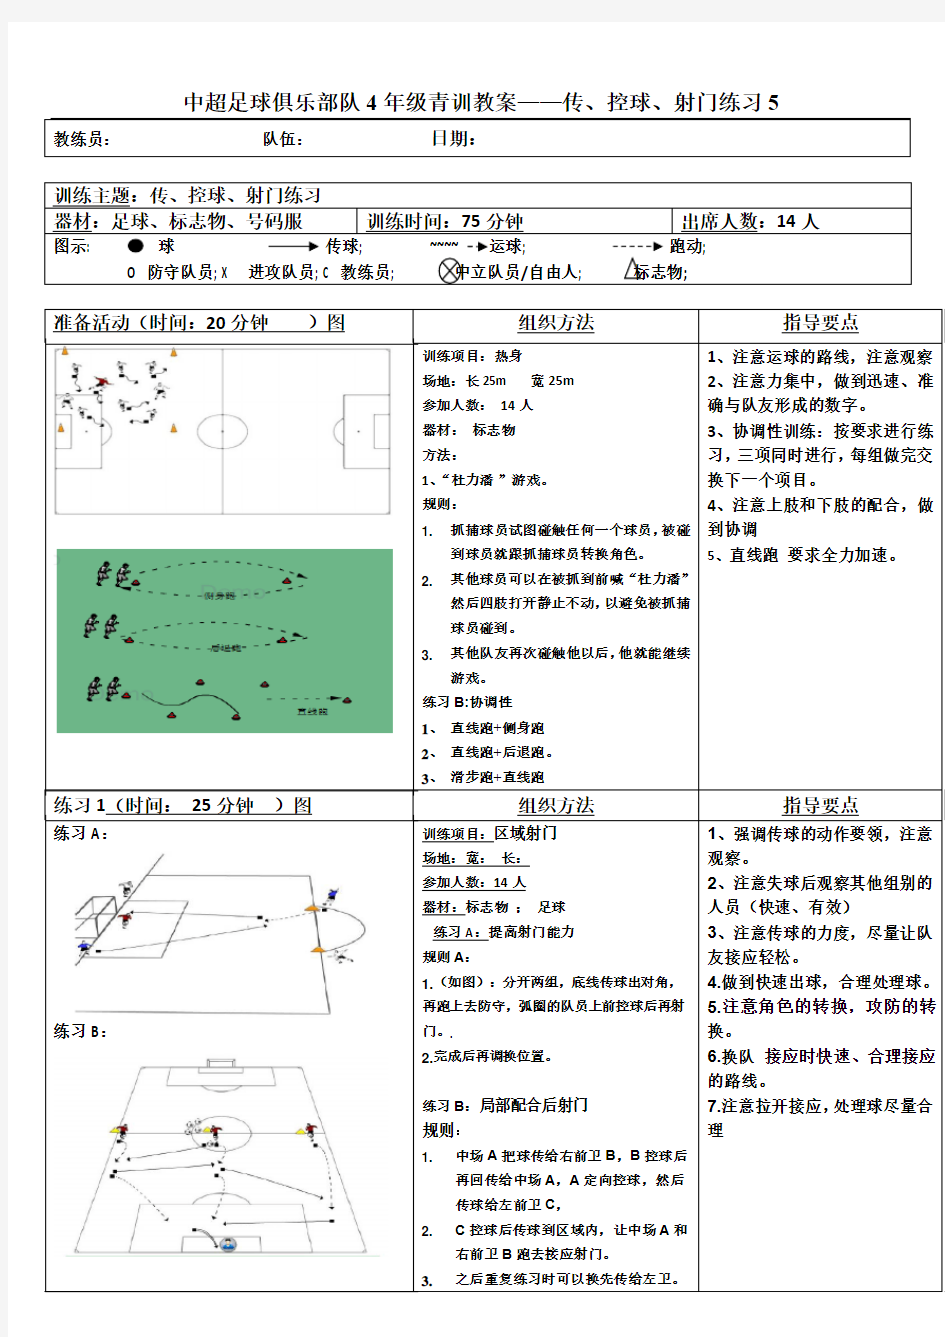 中超足球俱乐部队4年级青训教案——传、控球、射门练习5